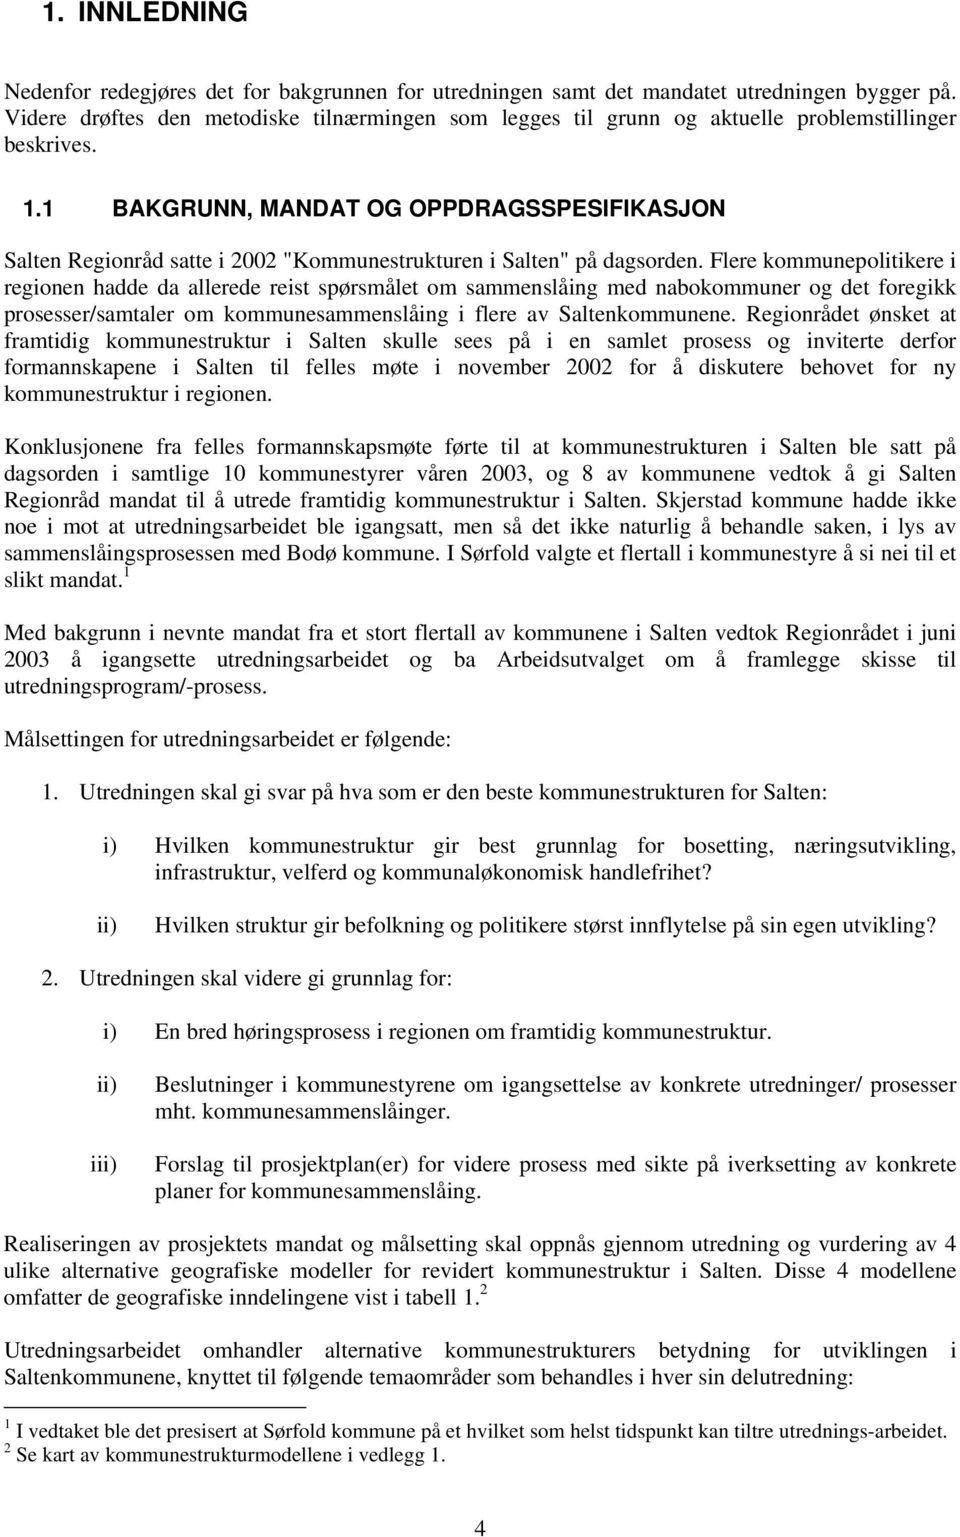 1 BAKGRUNN, MANDAT OG OPPDRAGSSPESIFIKASJON Salten Regionråd satte i 2002 "Kommunestrukturen i Salten" på dagsorden.